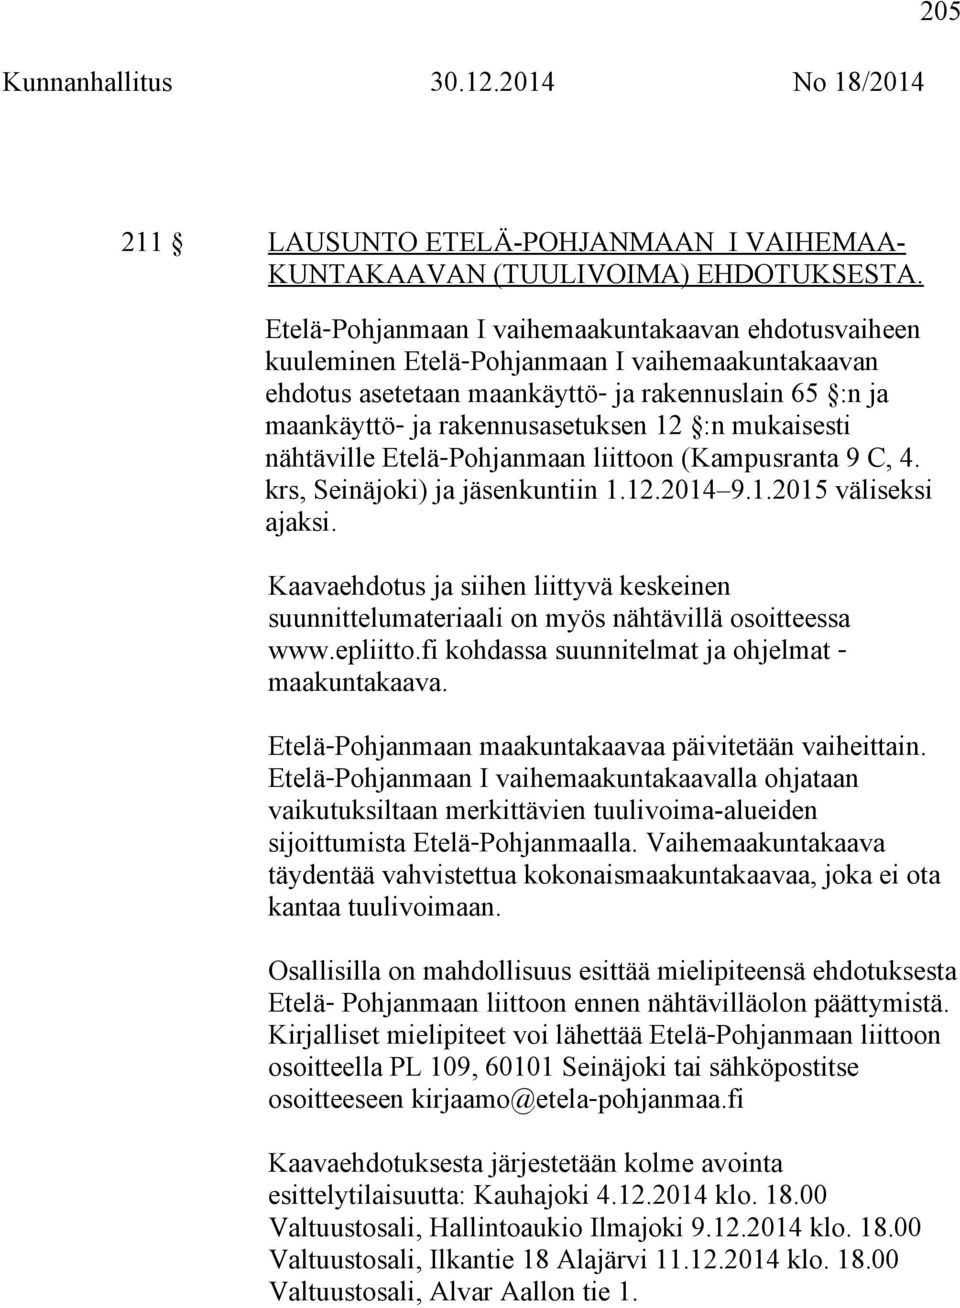 mukaisesti nähtäville Etelä Pohjanmaan liittoon (Kampusranta 9 C, 4. krs, Seinäjoki) ja jäsenkuntiin 1.12.2014 9.1.2015 väliseksi ajaksi.